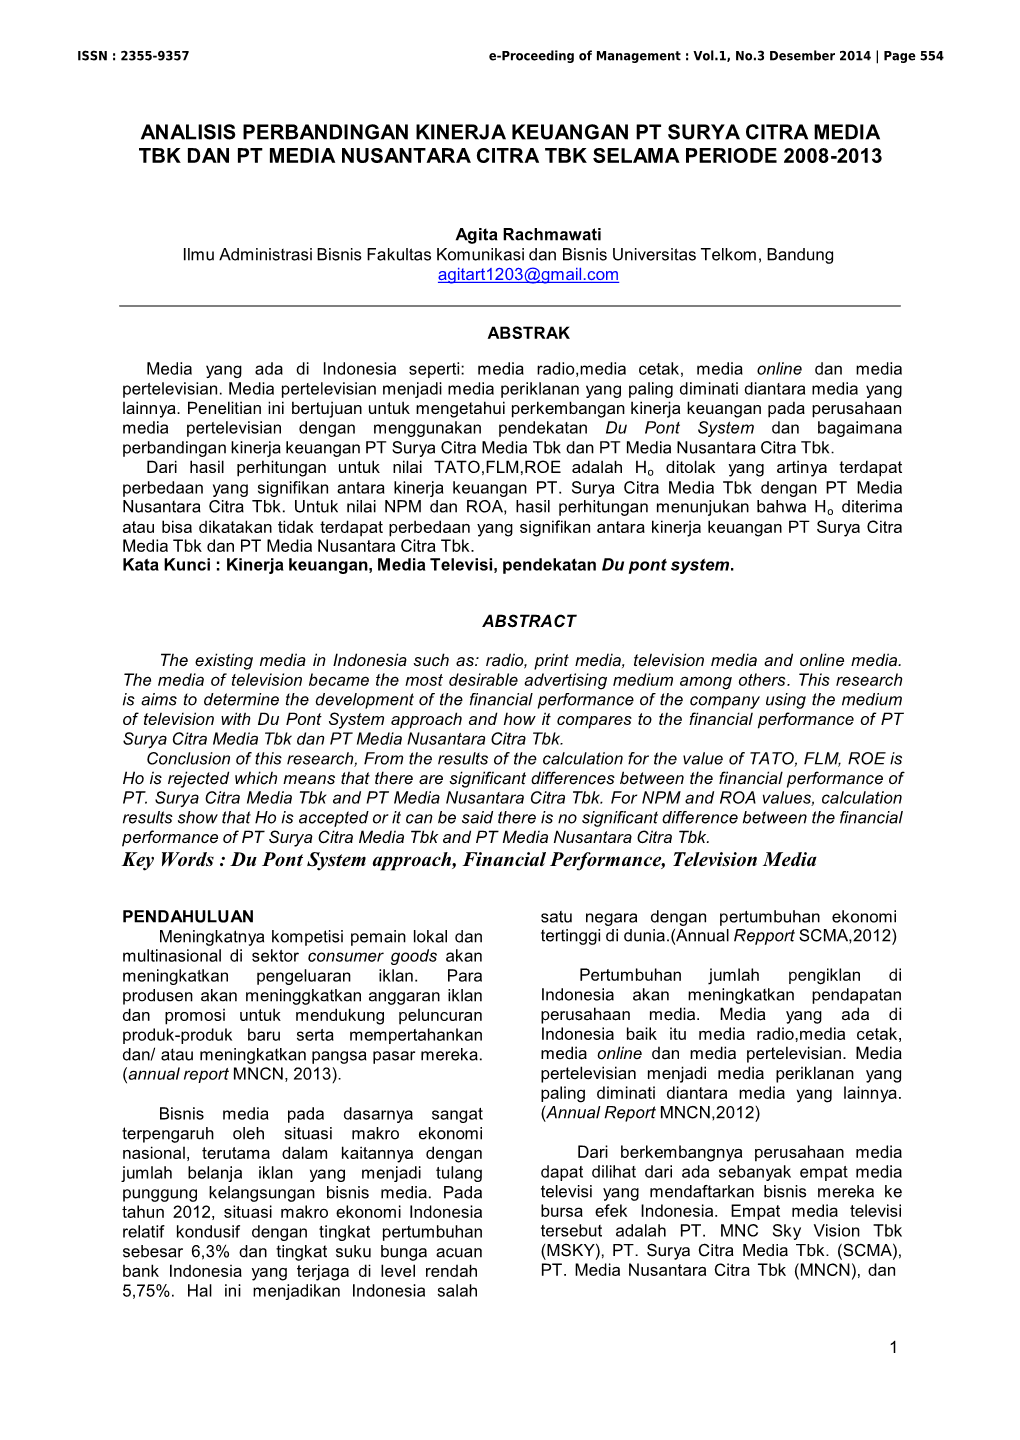 Analisis Perbandingan Kinerja Keuangan Pt Surya Citra Media Tbk Dan Pt Media Nusantara Citra Tbk Selama Periode 2008-2013